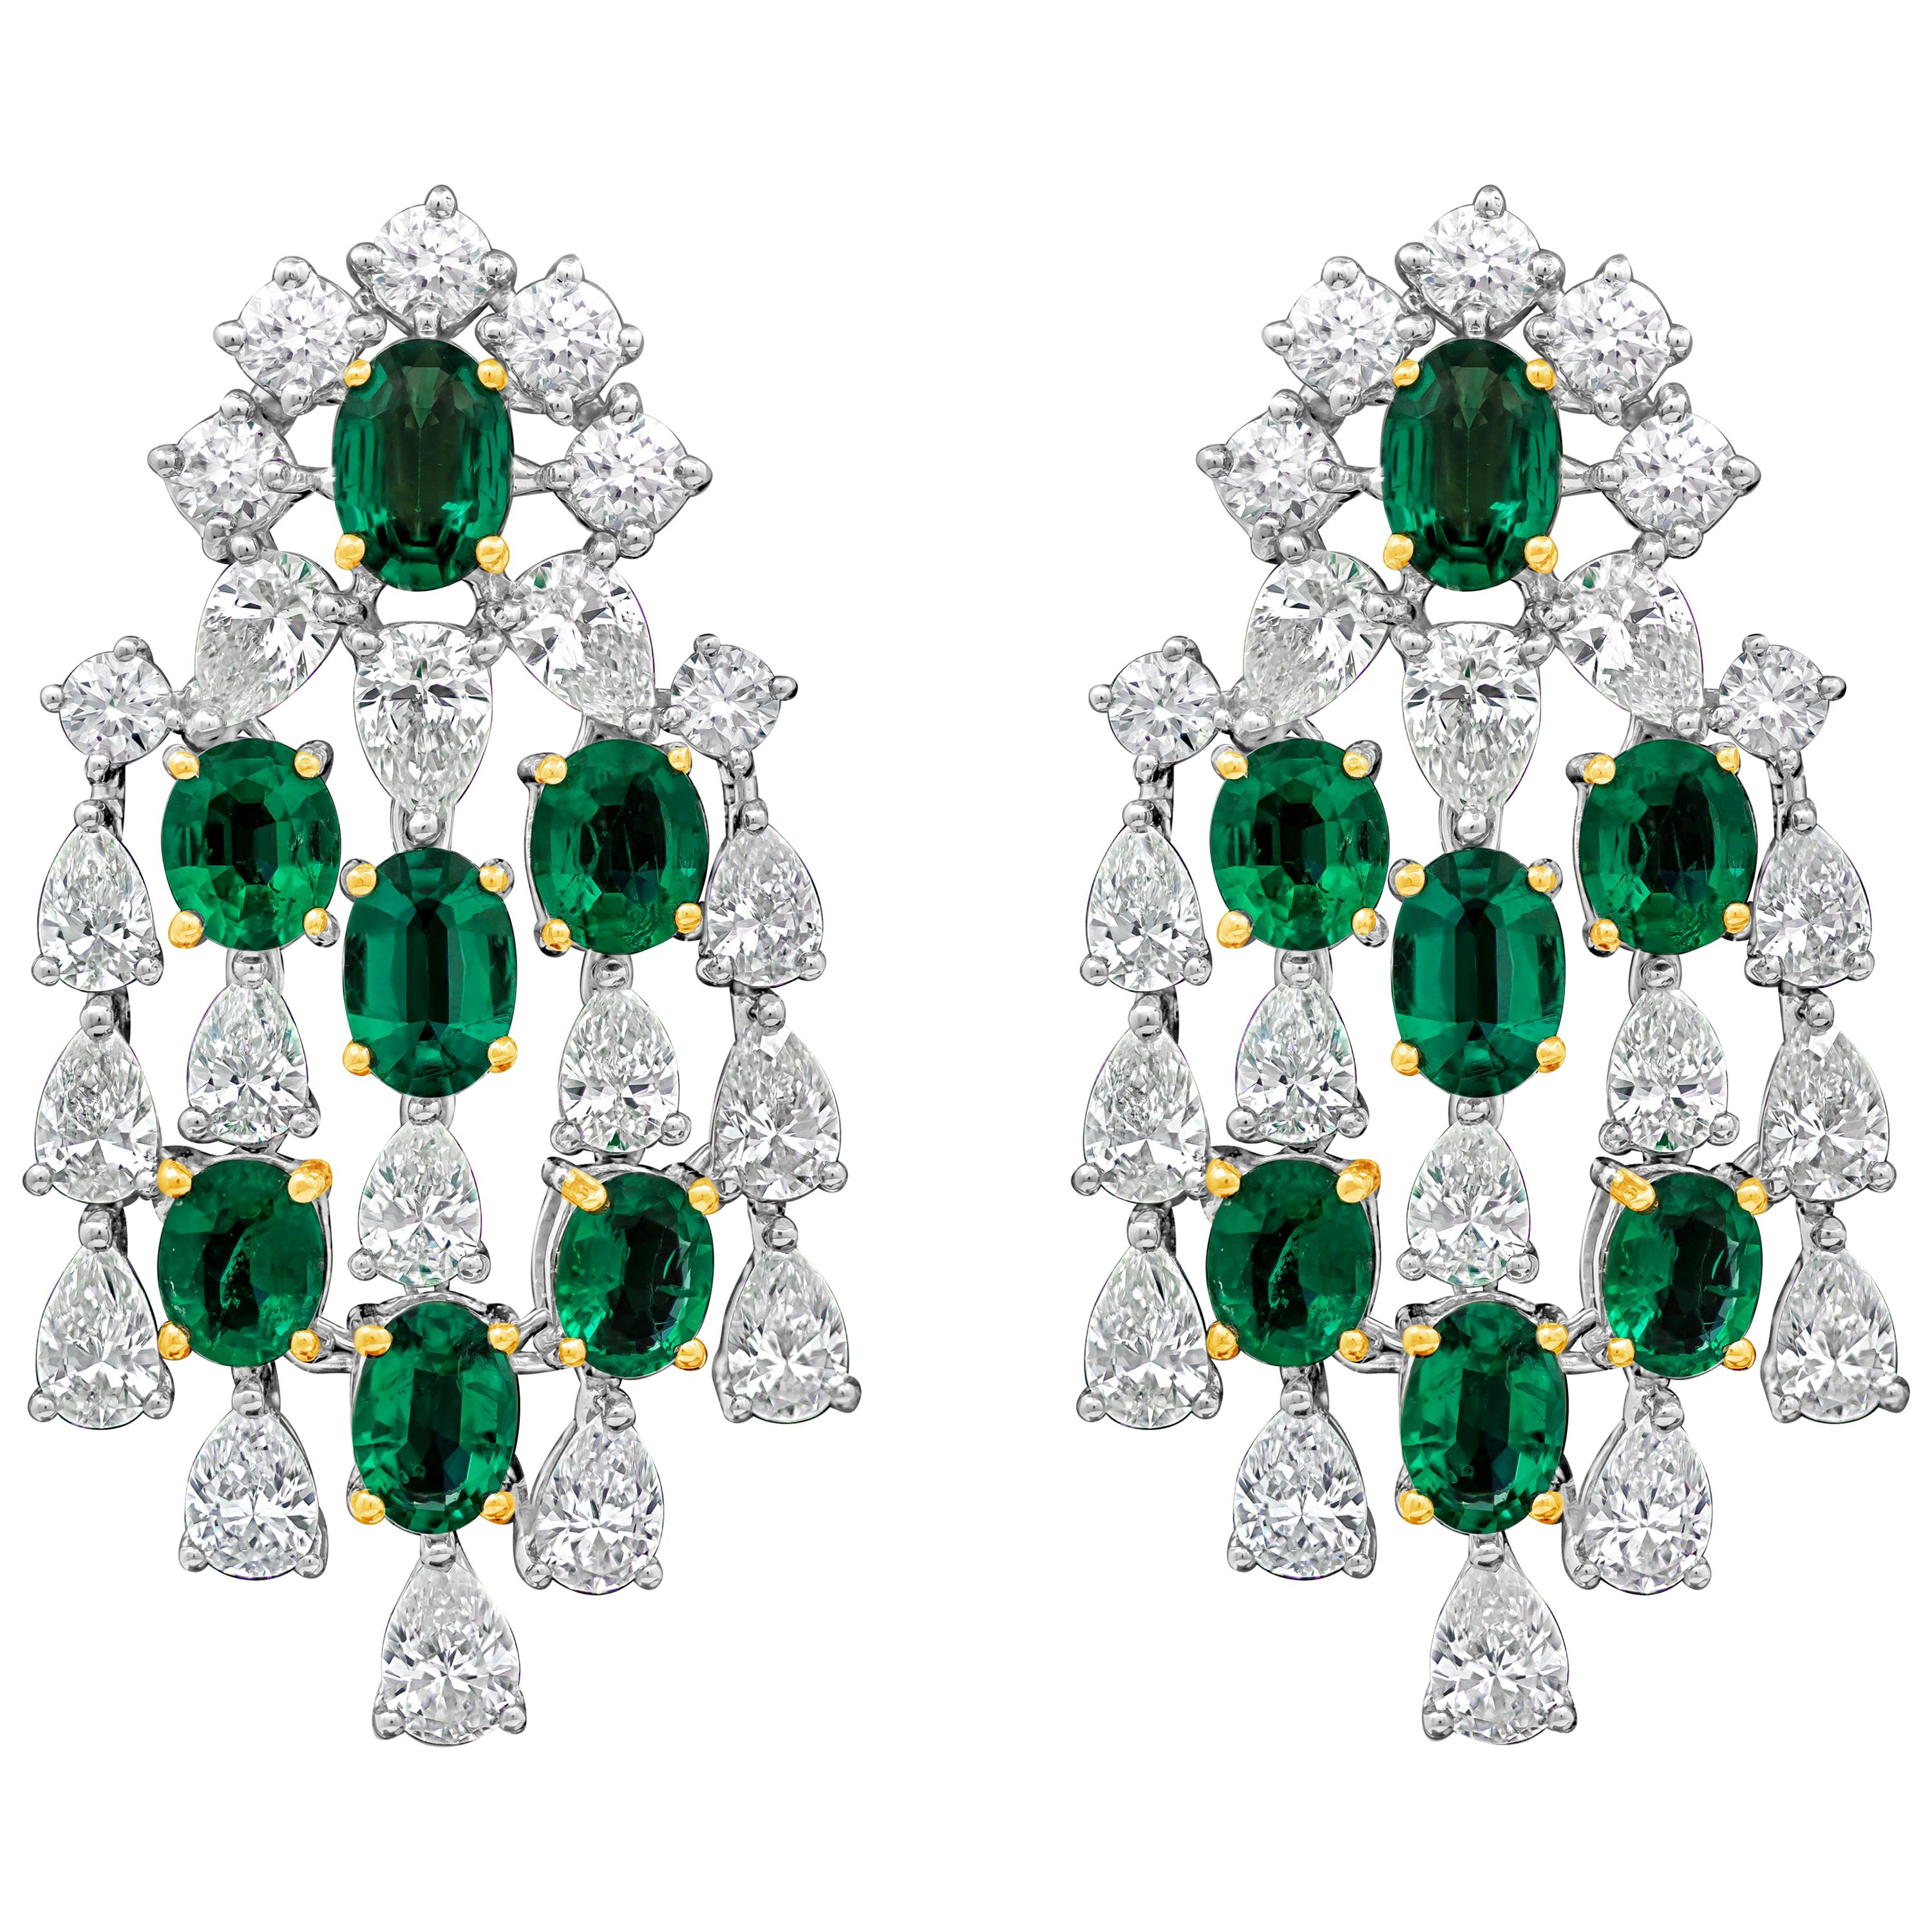 Roman Malakov, Emerald and Diamond Chandelier Earrings